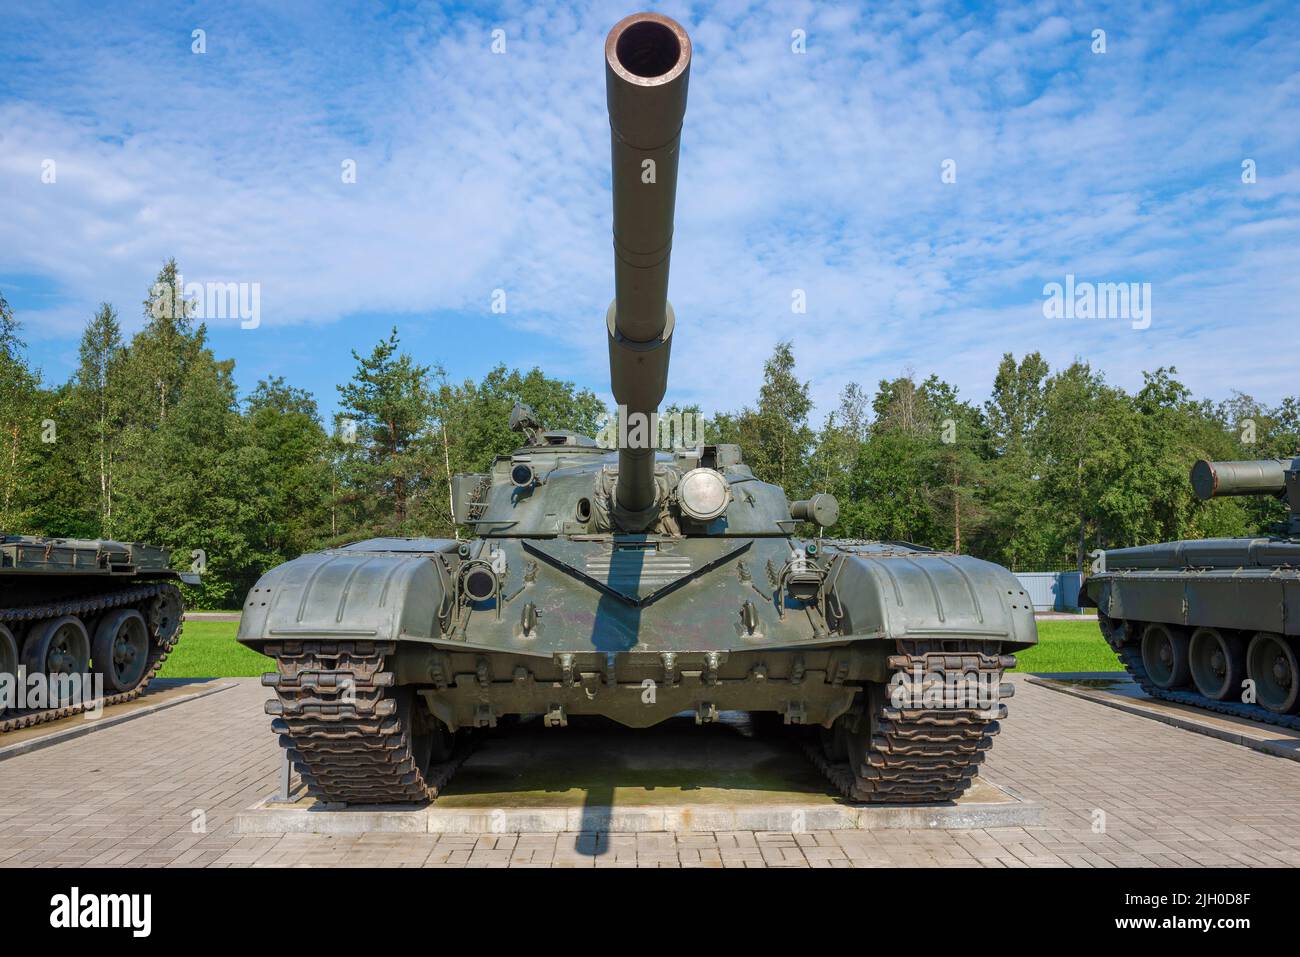 KIROVSK, RUSSIE - 07 SEPTEMBRE 2018 : réservoir russe soviétique de T-72 gros plan. Vue avant. Exposition au musée « Breakthrough of the Siege of Leningrad » Banque D'Images